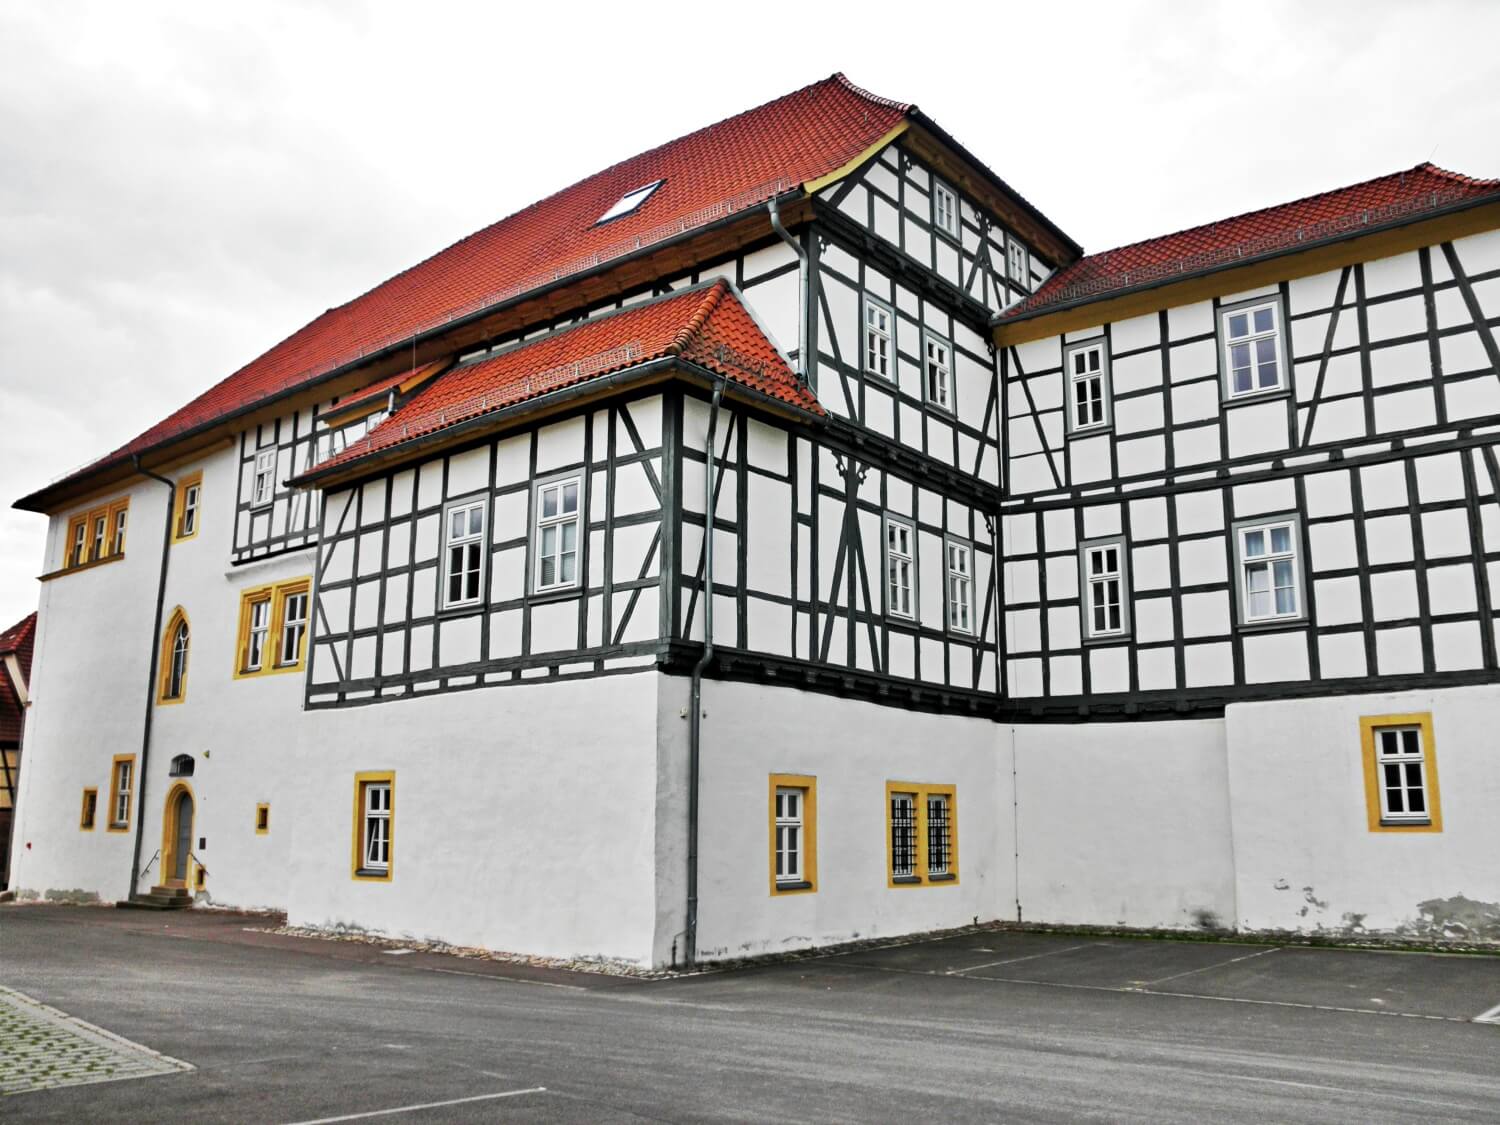 Behringen Castle